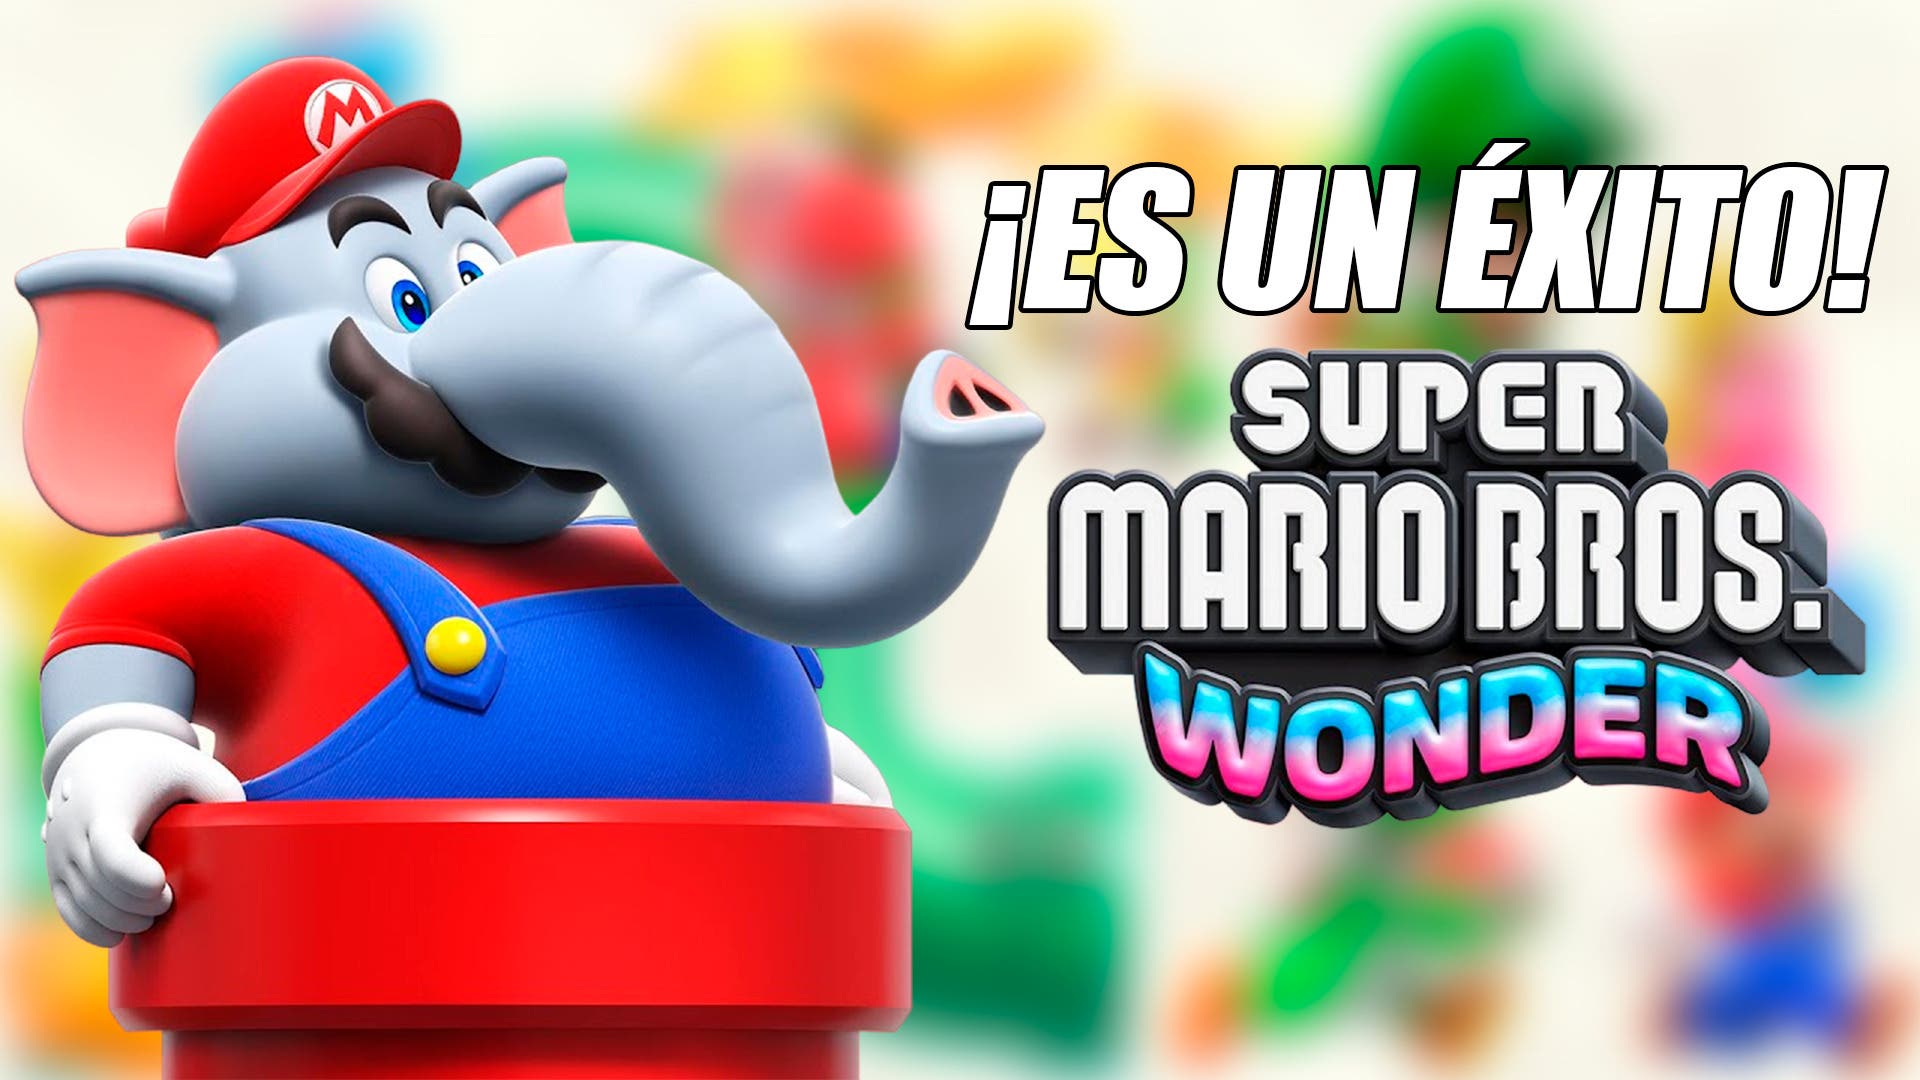 Quanto vendeu o Super Mario Bros. Wonder?